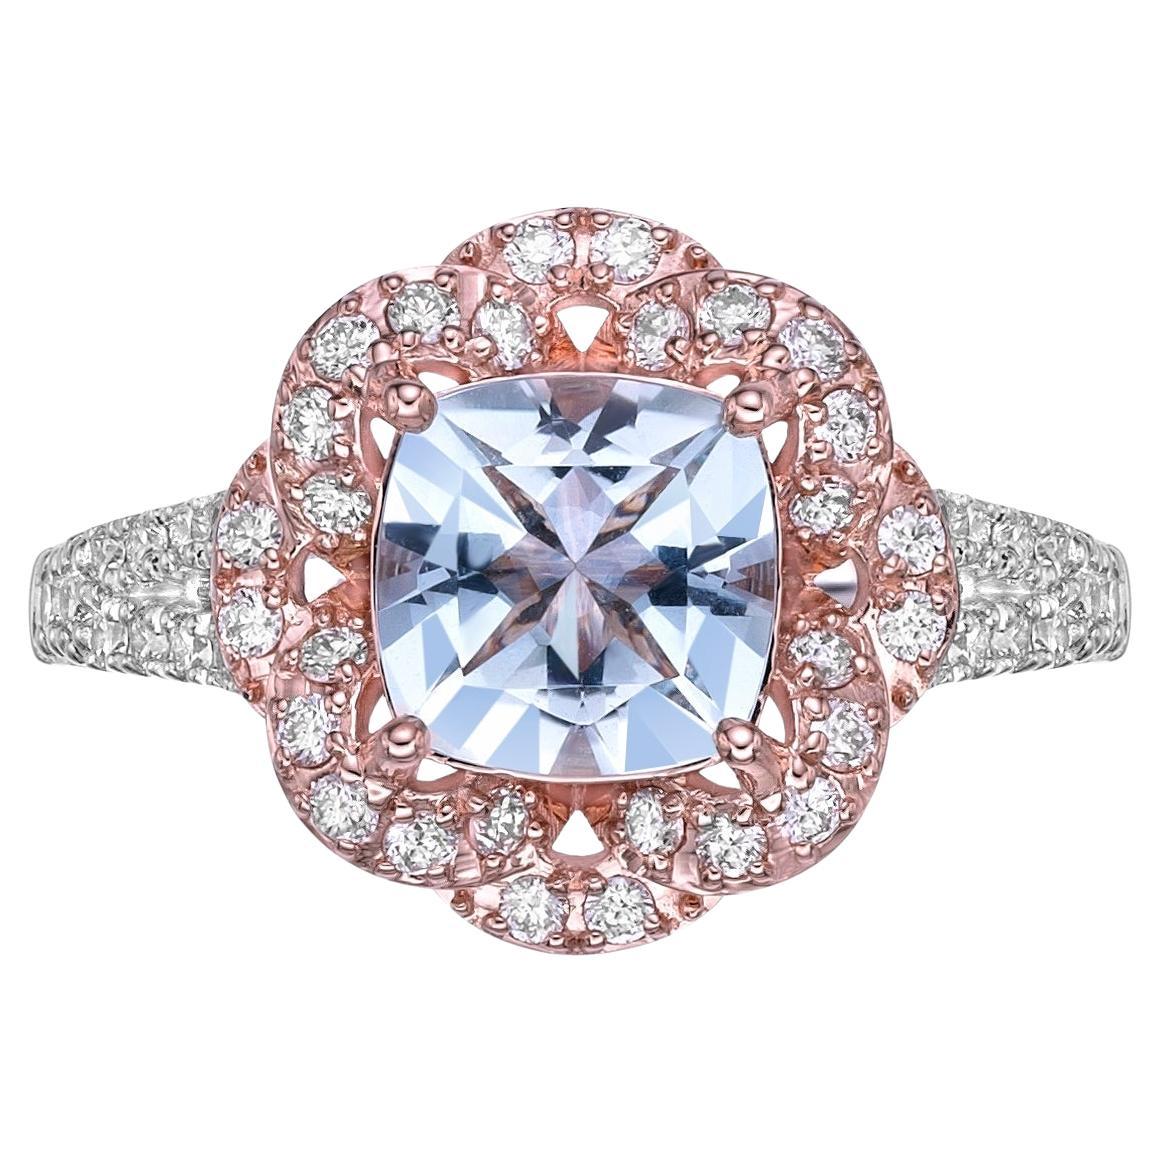 1.16 Carat Aquamarine Fancy Ring in 18Karat White Rose Gold with Diamond.  